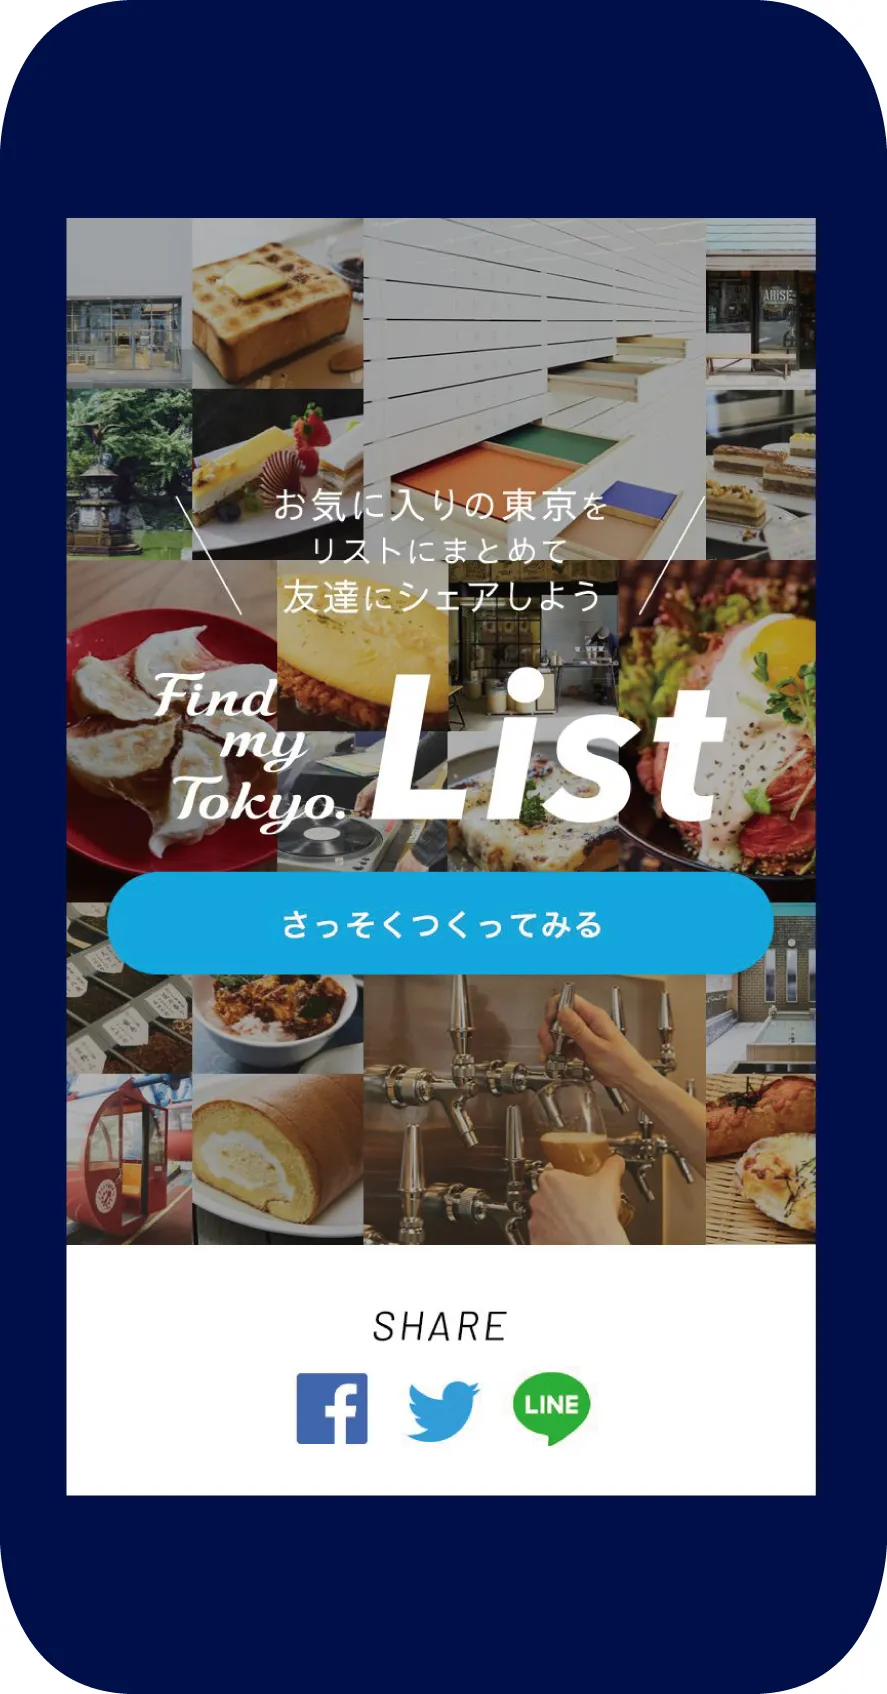 お気に入りの東京をリストにまとめて友達にシェアできるWEBサービス「Find my Tokyo. List」も提供中